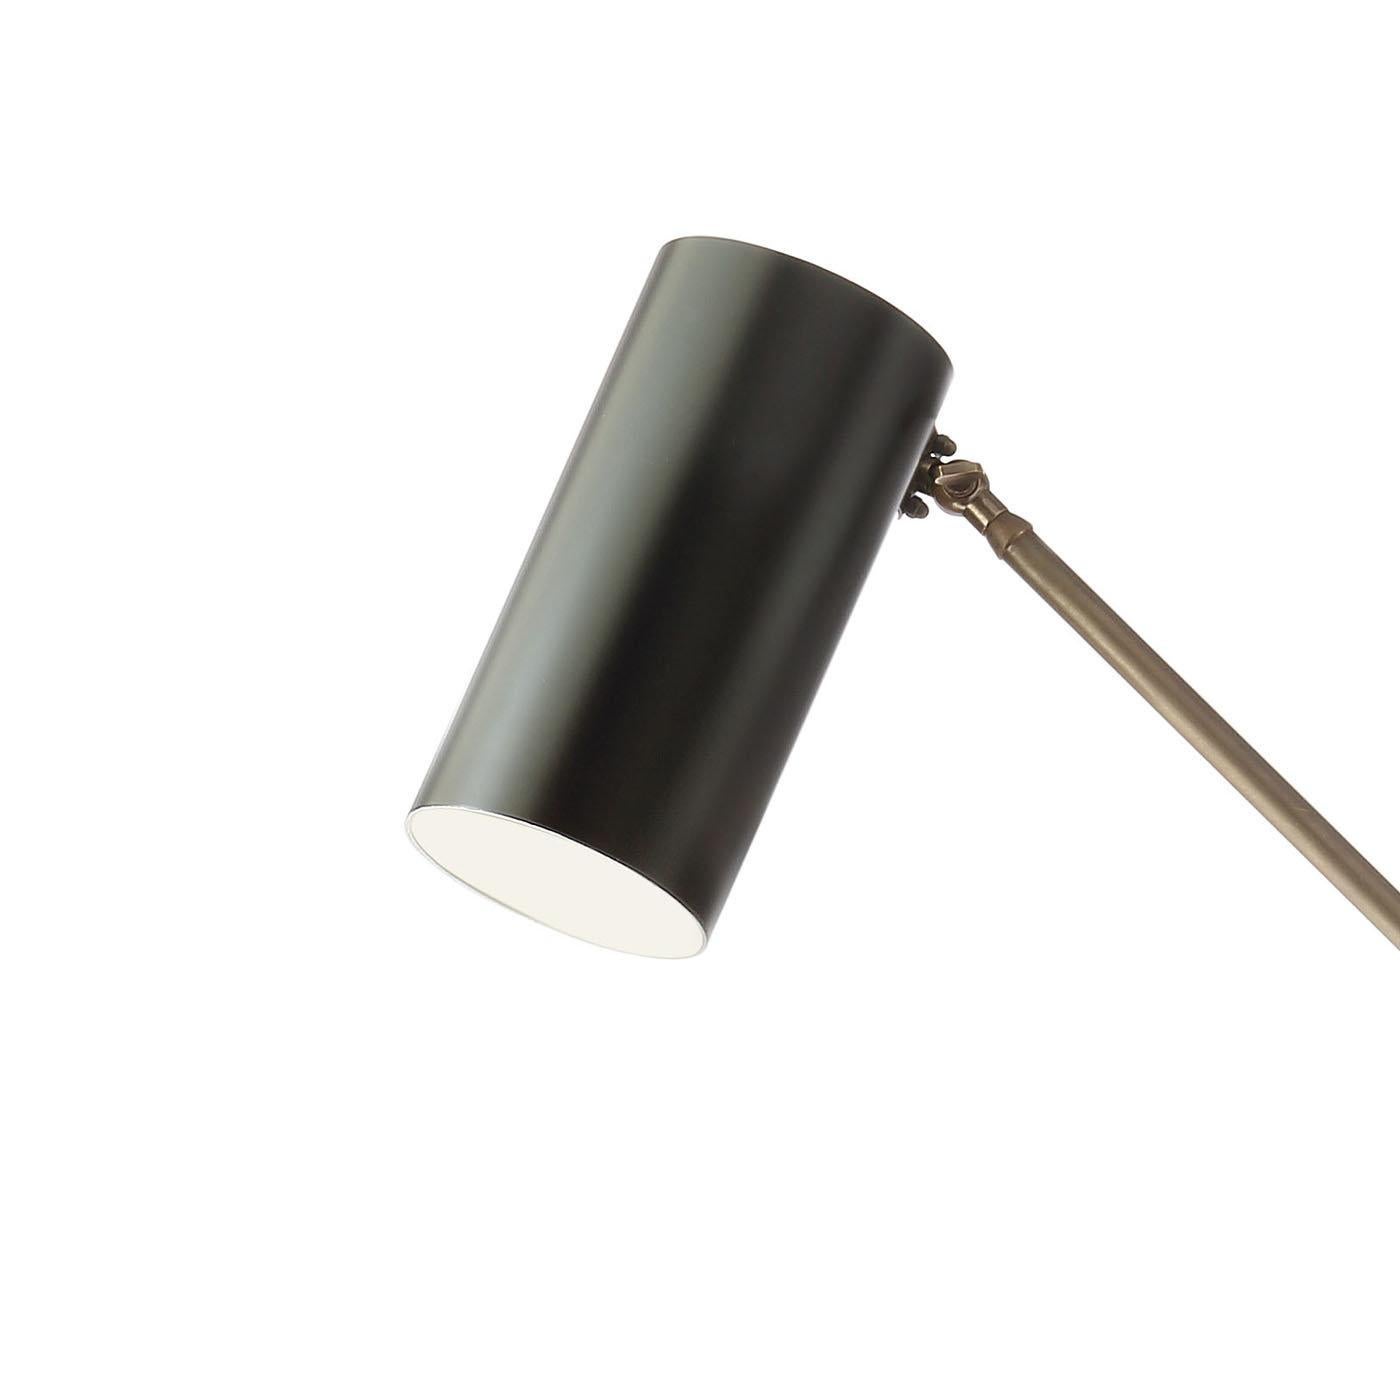 Cette lampe de bureau pratique présente une élégante structure en laiton avec une finition bronze qui peut être fixée sur n'importe quelle surface grâce à son système de support en laiton. Les deux fines tiges, reliées au milieu, permettent à la